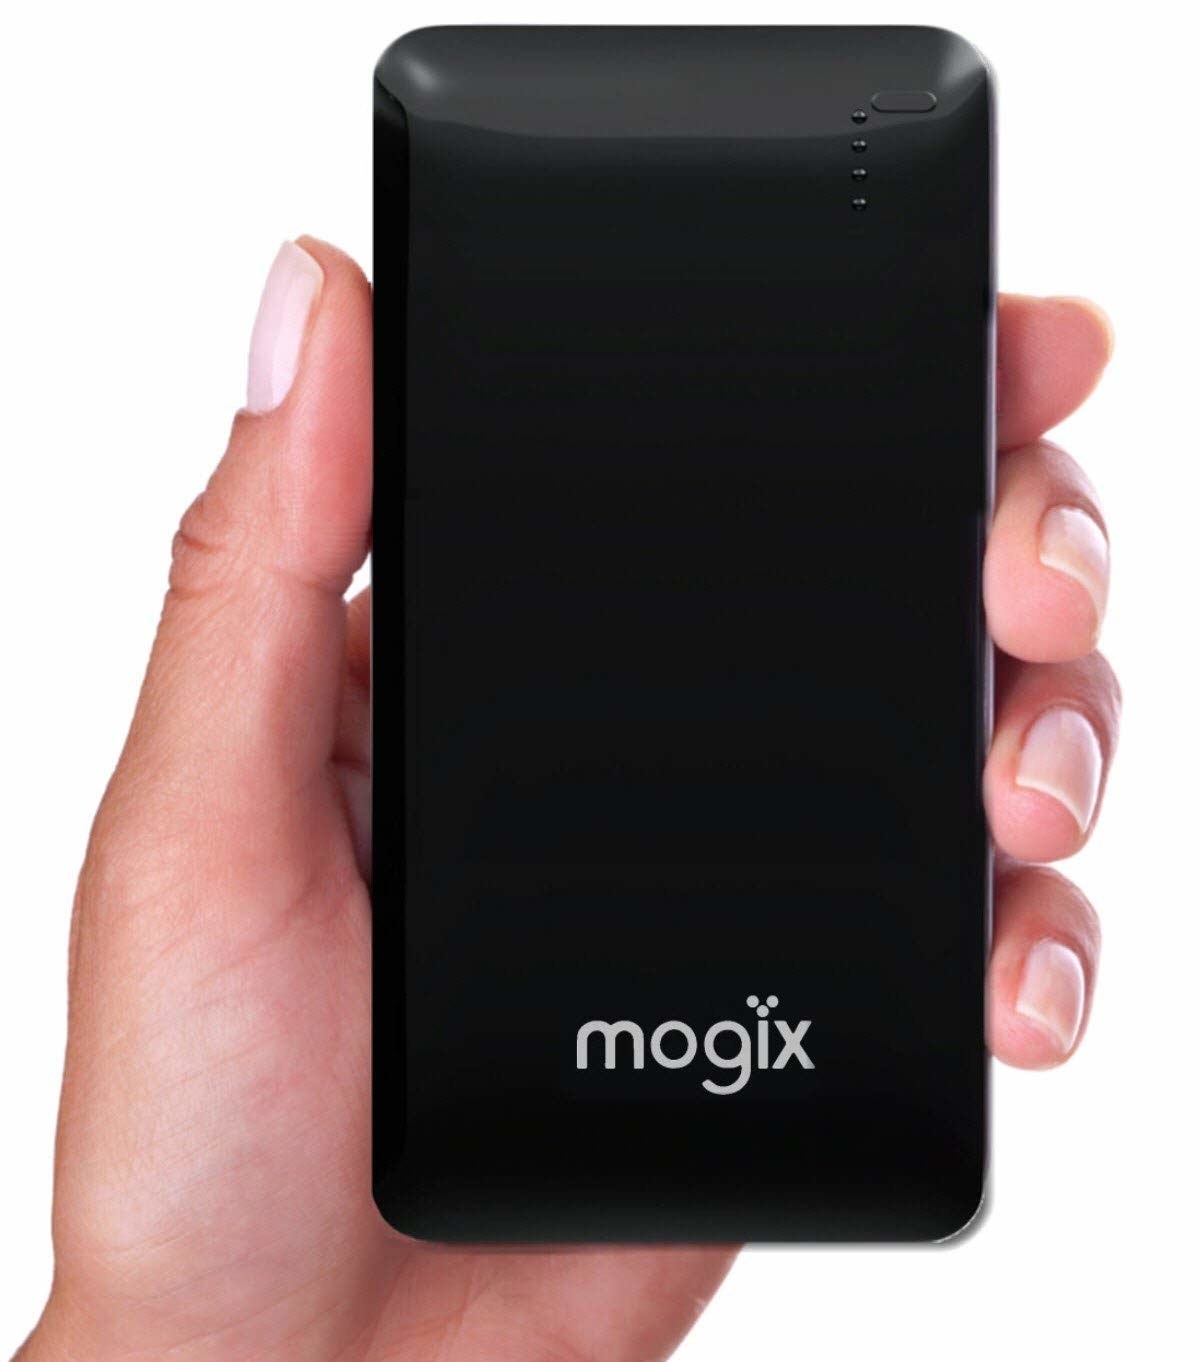 a black rectangular external charger